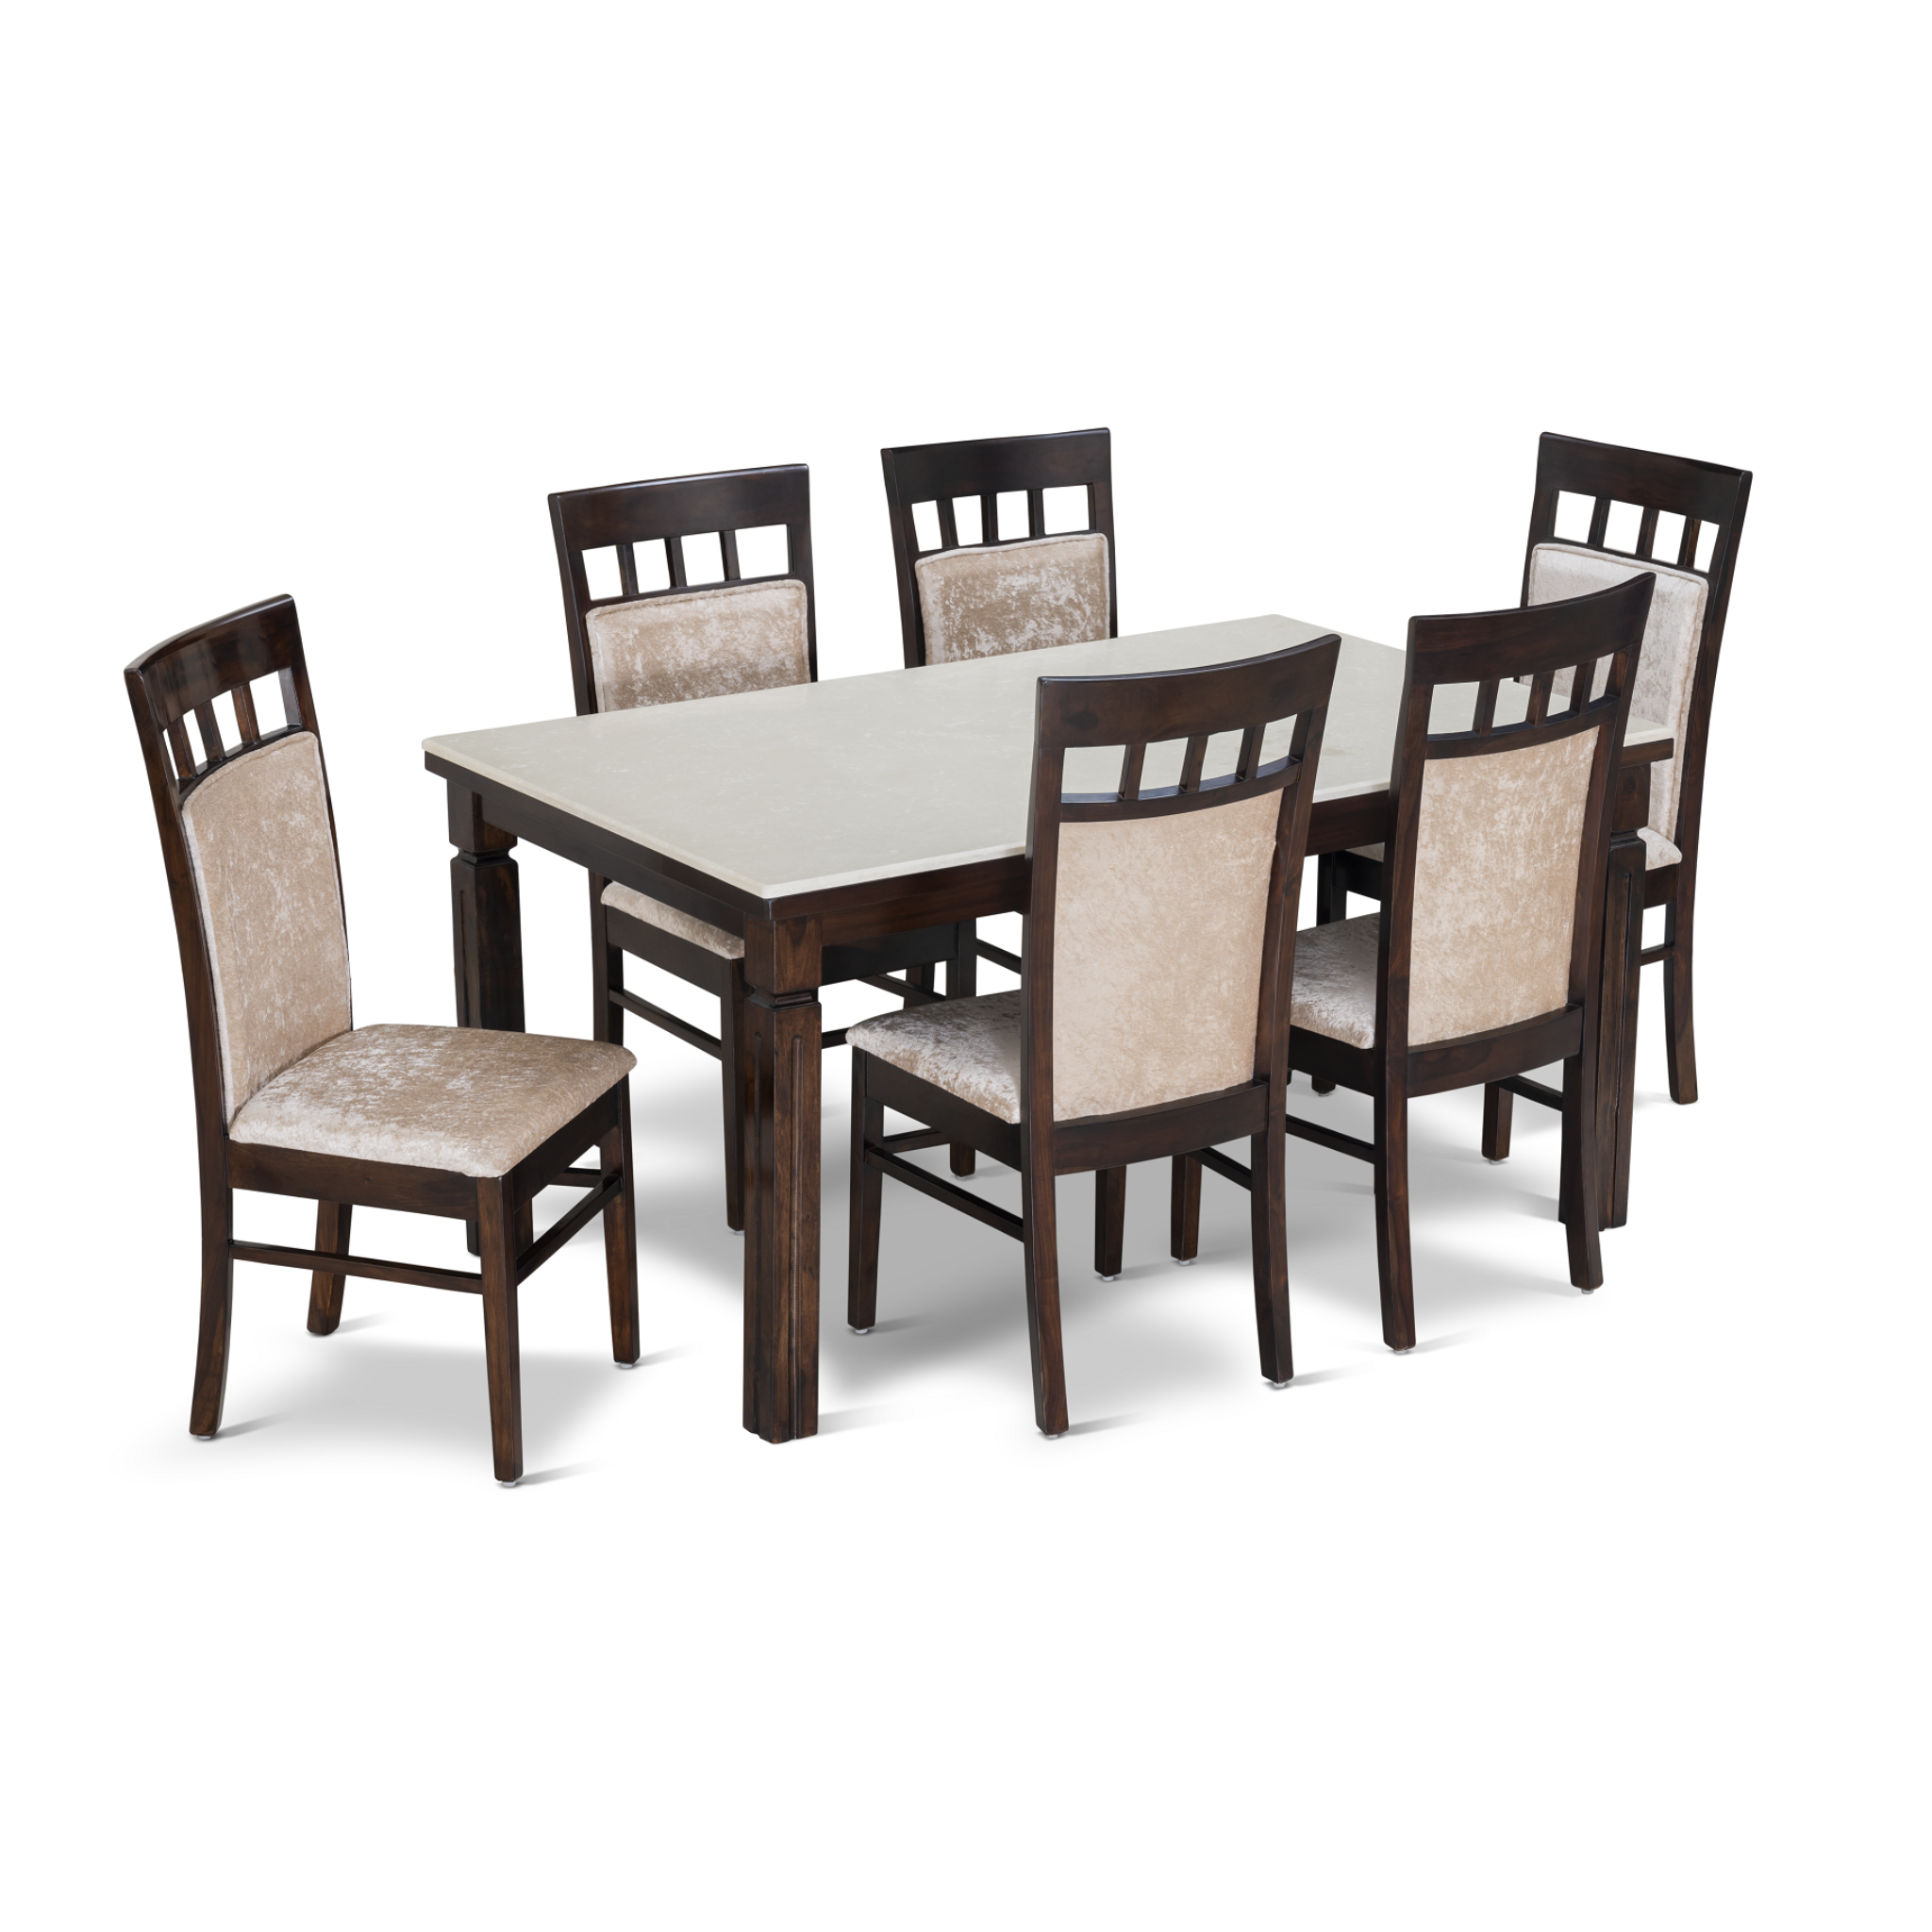 Cuba Dining Table with Cuba Chair